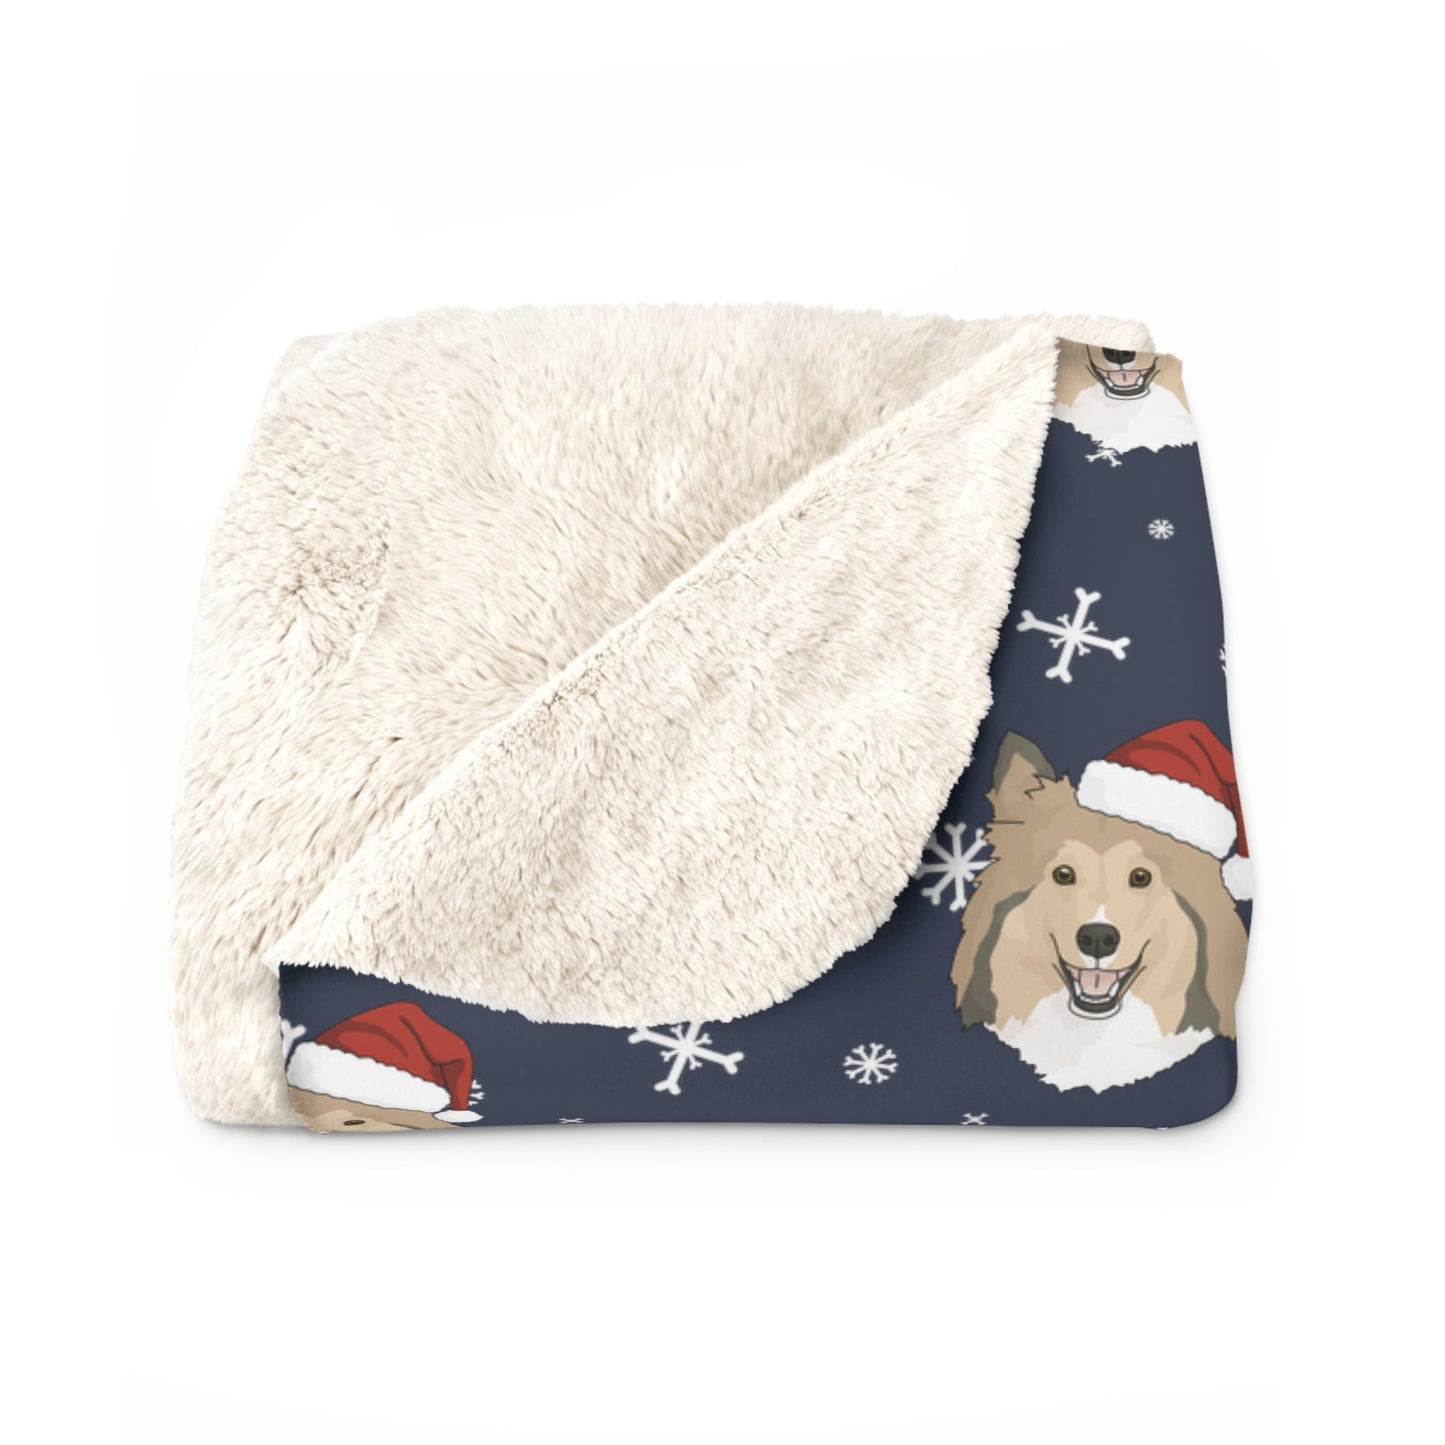 Winter Shetland Sheepdog Blanket | Sherpa Fleece - Detezi Designs-21581415279553418956